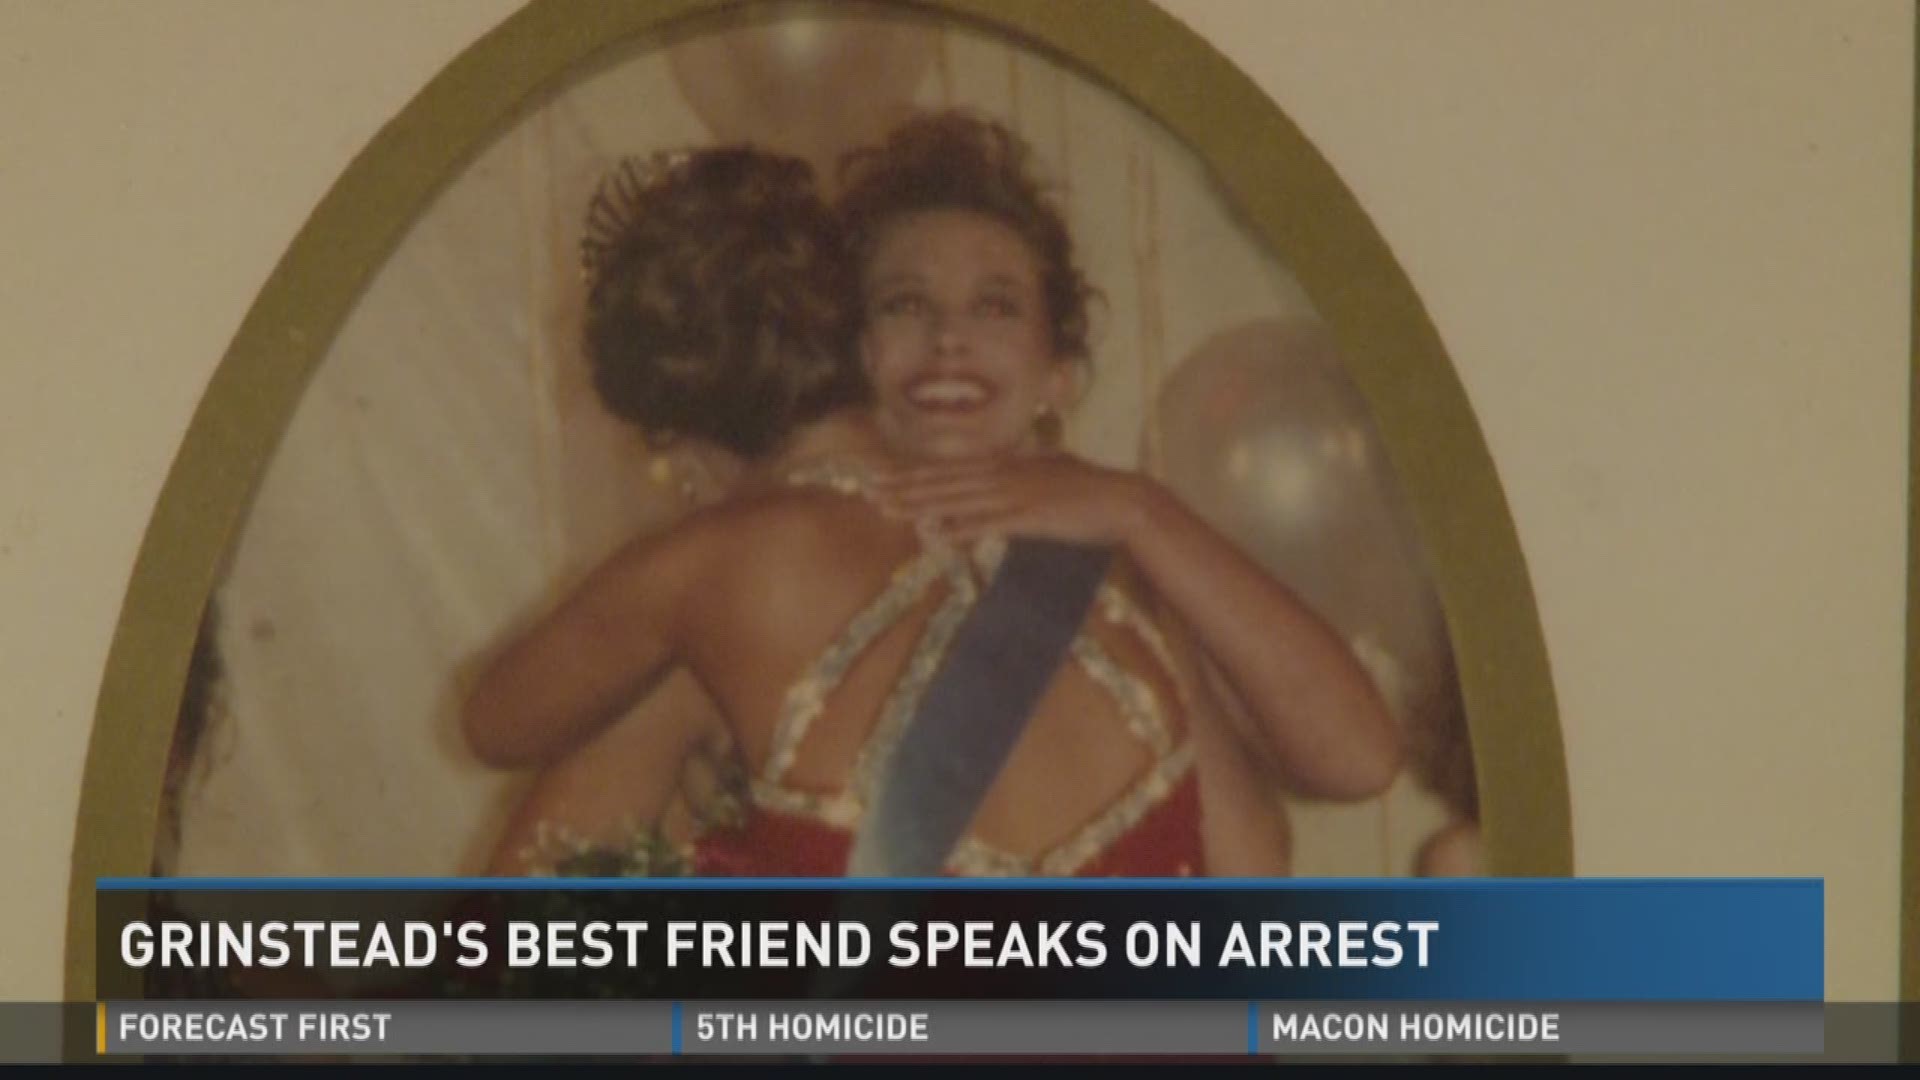 Grinstead's best friend speaks on arrest